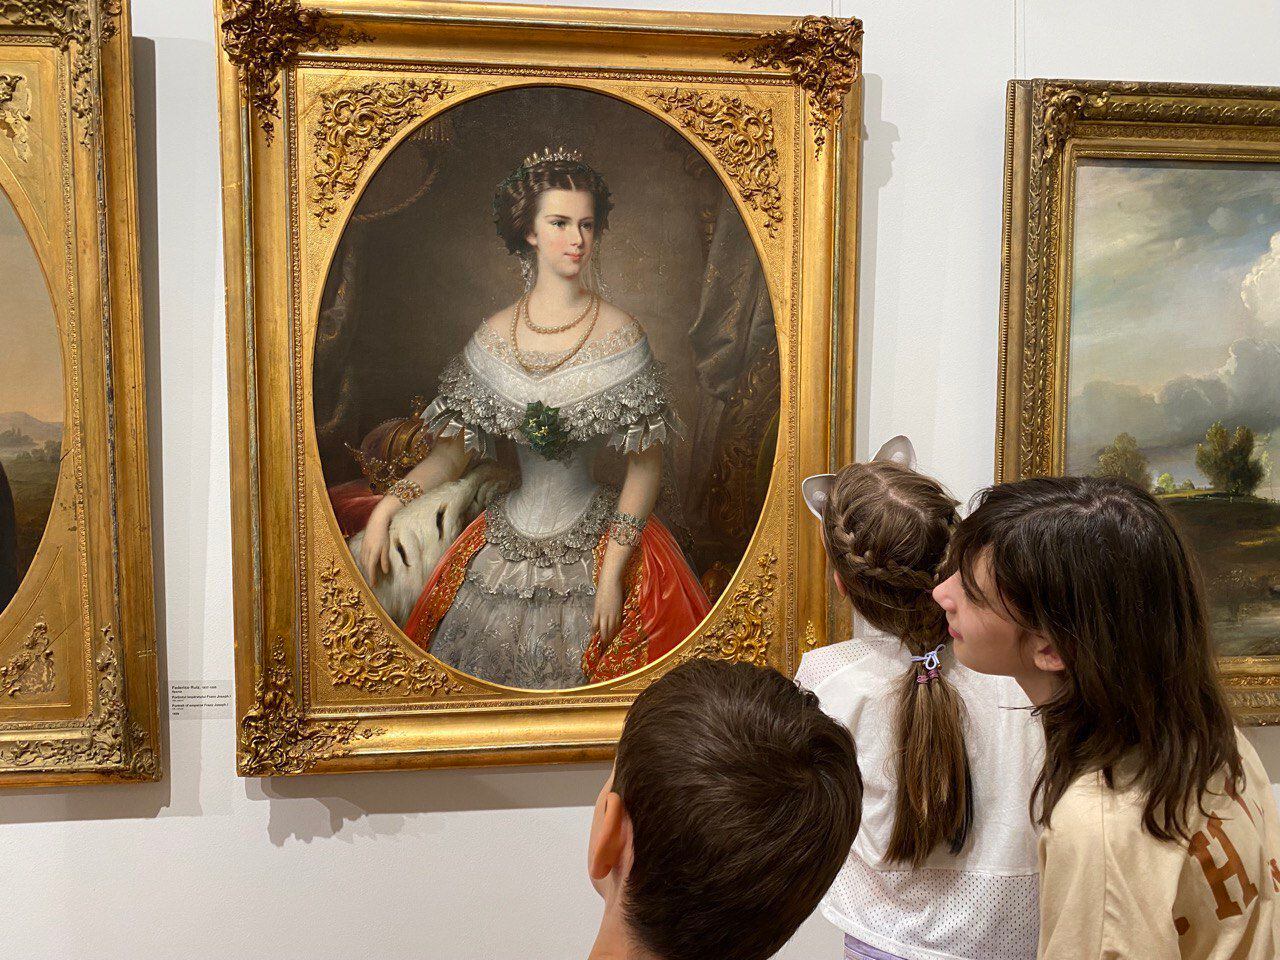 El misterio del cuadro de la emperatriz Sissi atribuido a un desconocido pintor español